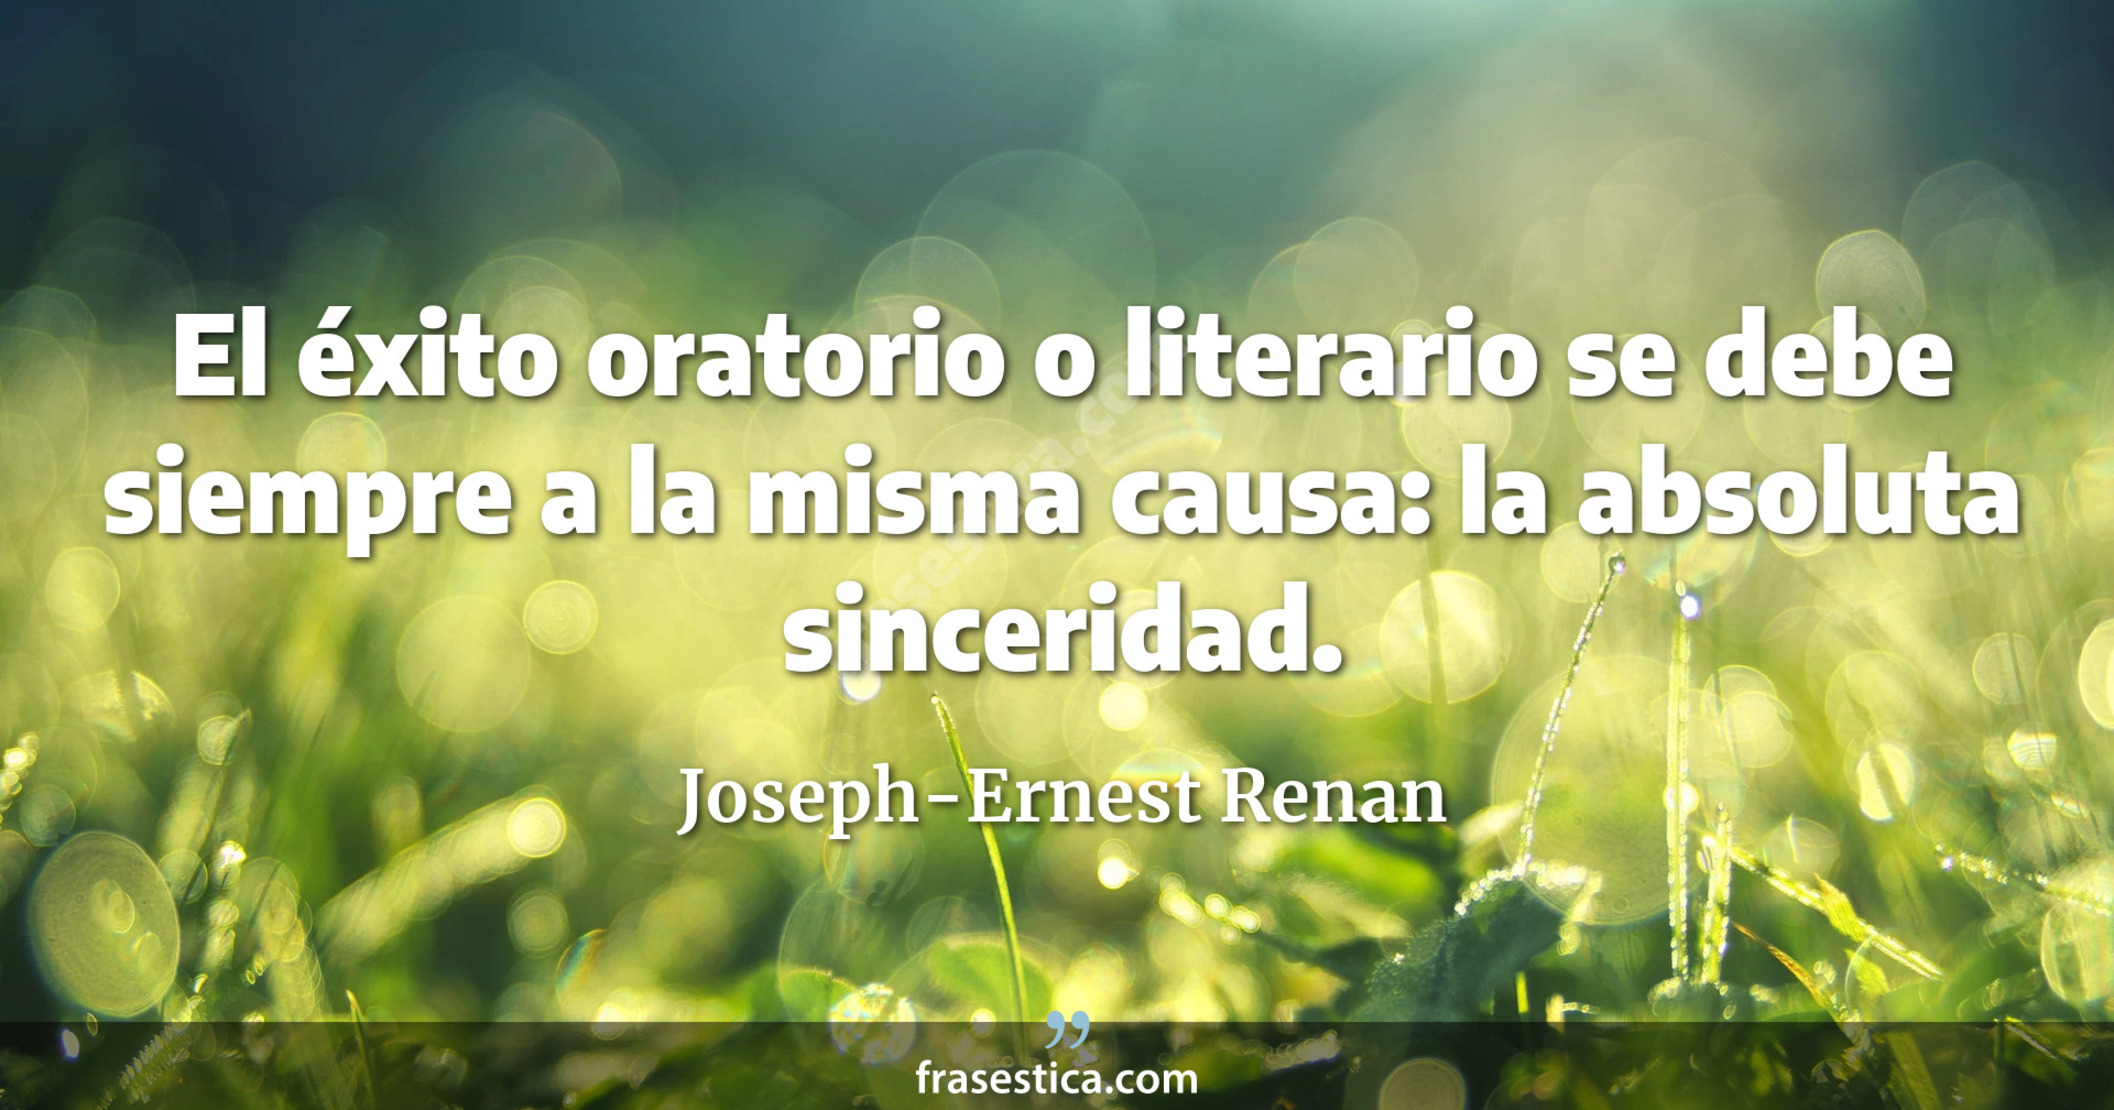 El éxito oratorio o literario se debe siempre a la misma causa: la absoluta sinceridad. - Joseph-Ernest Renan